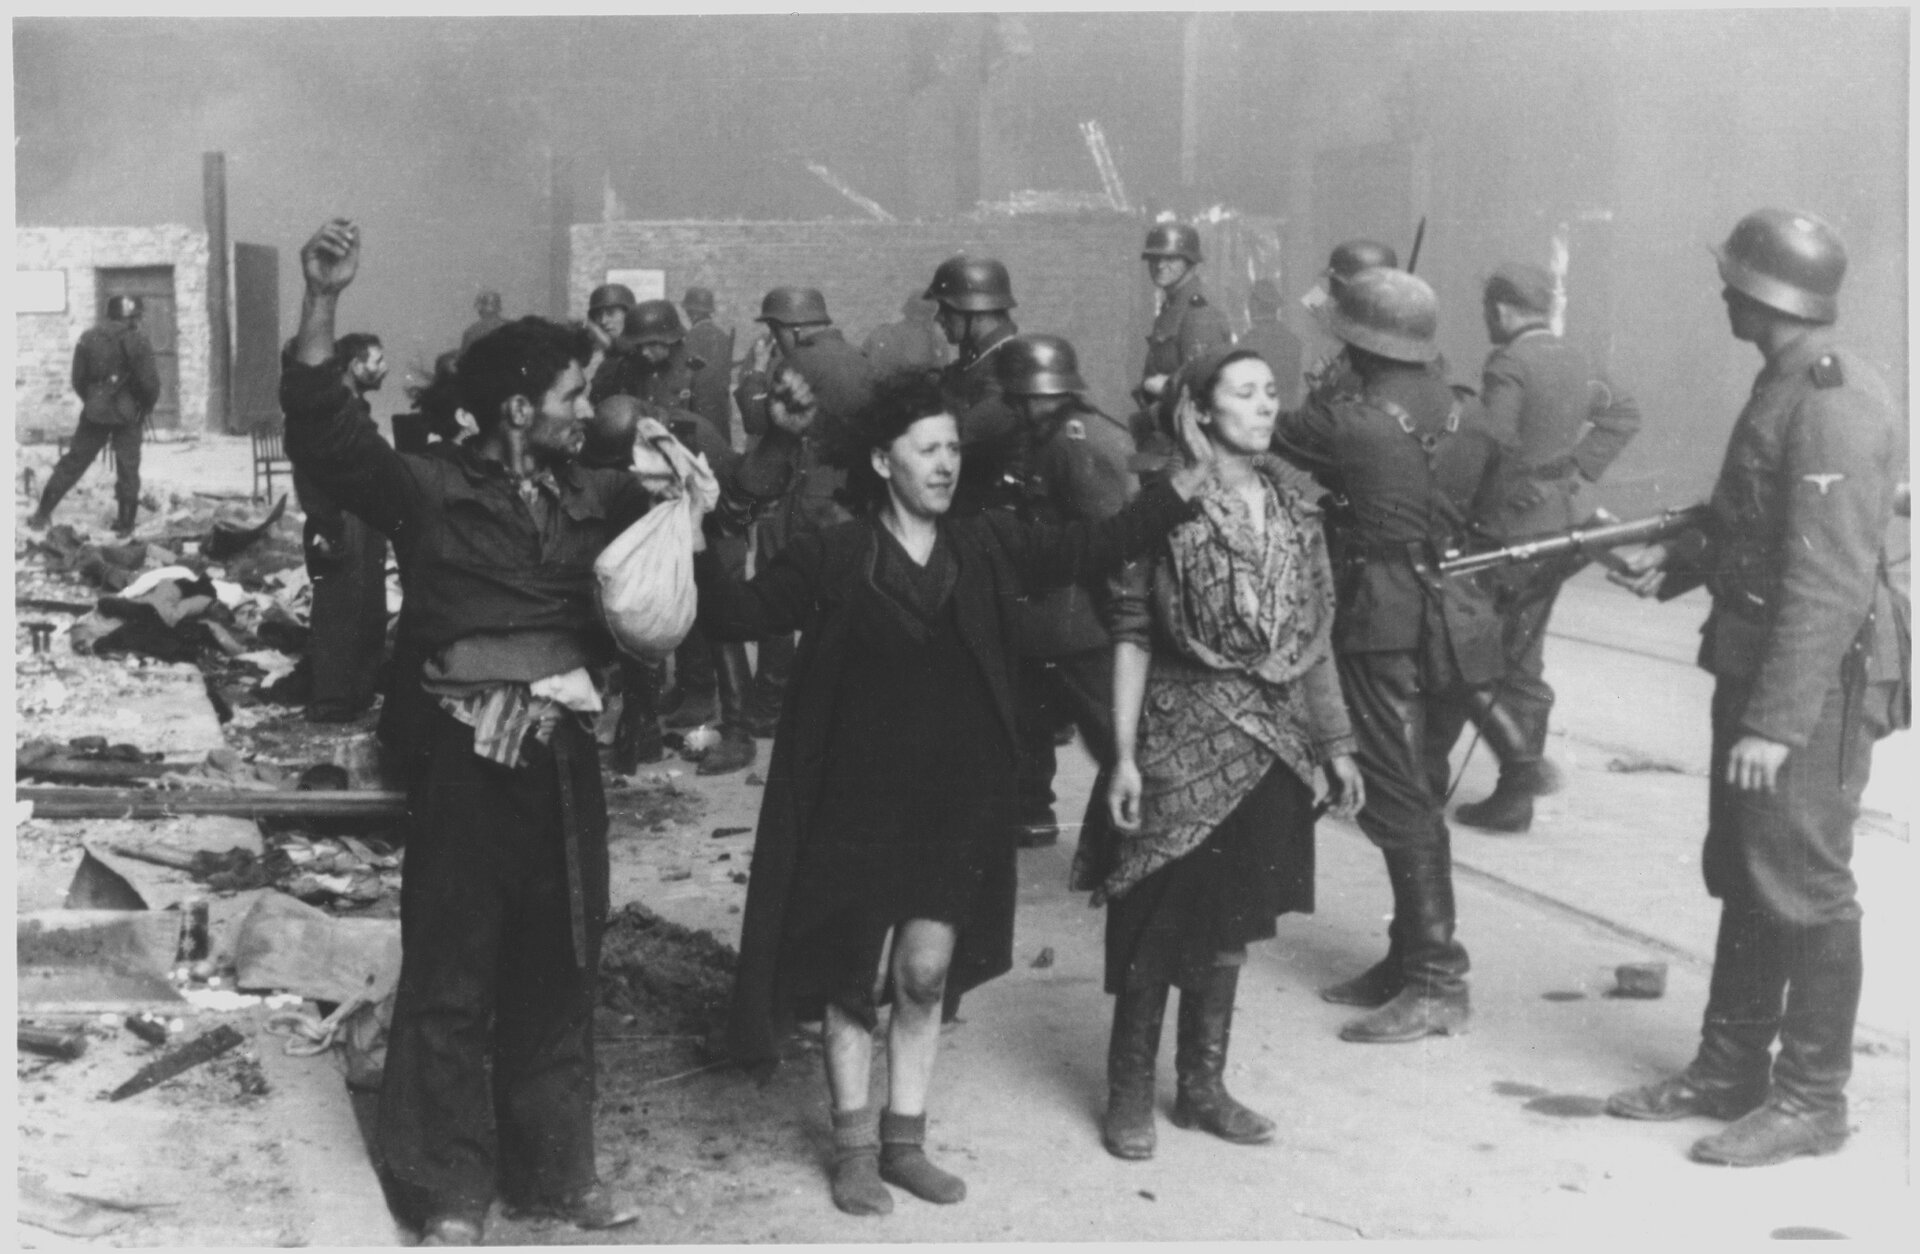 Czarno‑biała fotografia przedstawia grupę członków żydowskiego ruchu oporu aresztowanych przez niemieckich żołnierzy. żydzi mają podniesione do grupy ręce i są otoczeni przez niemieckich żołnierzy uzbrojonych w karabiny maszynowe. W oddali znajdują się zniszczone i płonące kamienice. 